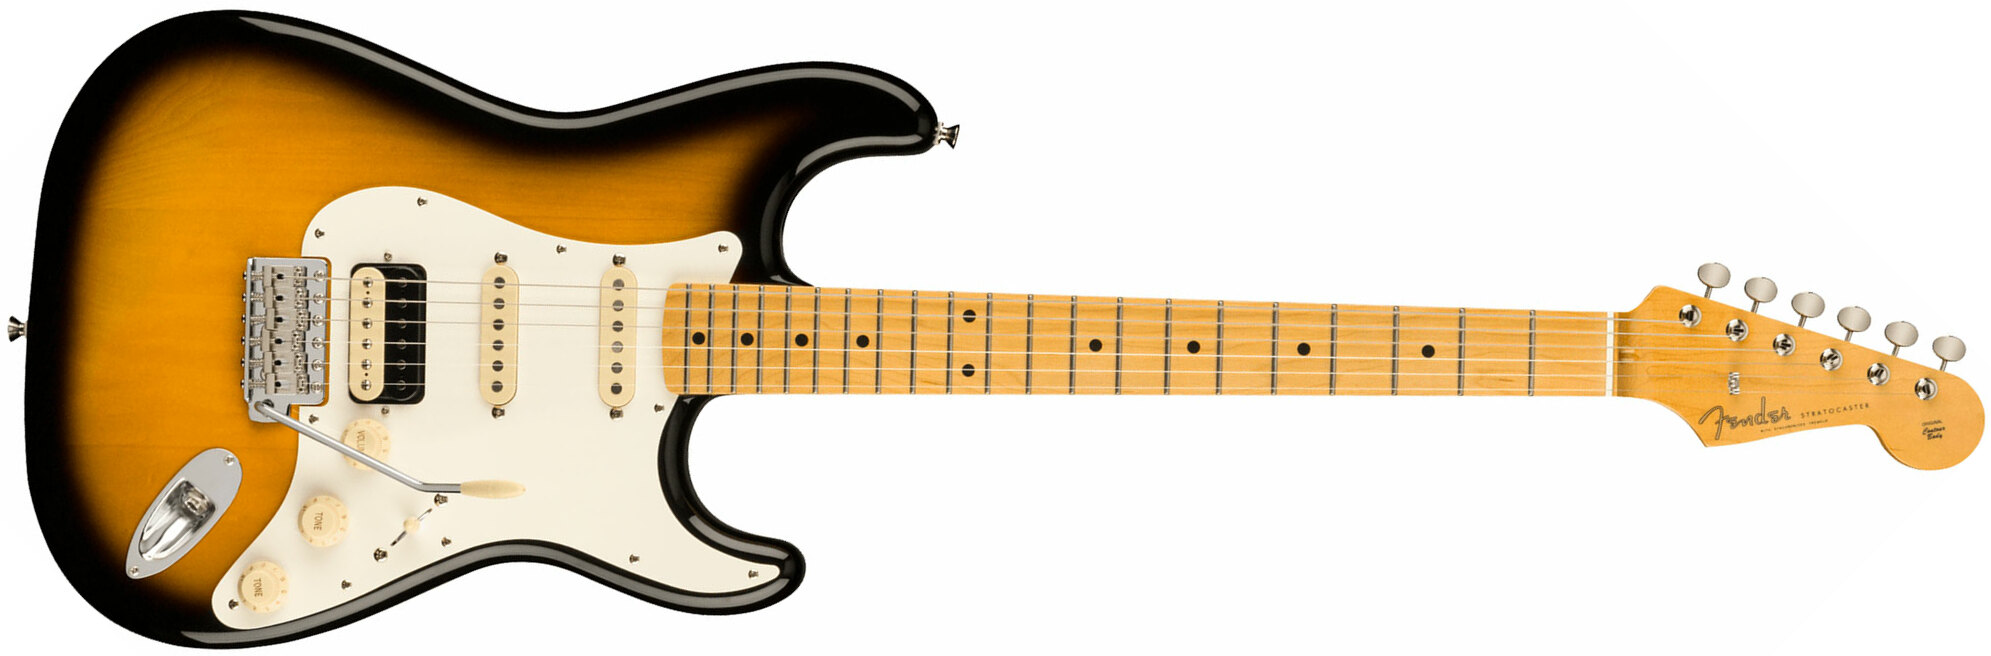 Fender Strat Jv Modified '50s Jap Hss Trem Mn - 2-color Sunburst - E-Gitarre in Str-Form - Main picture